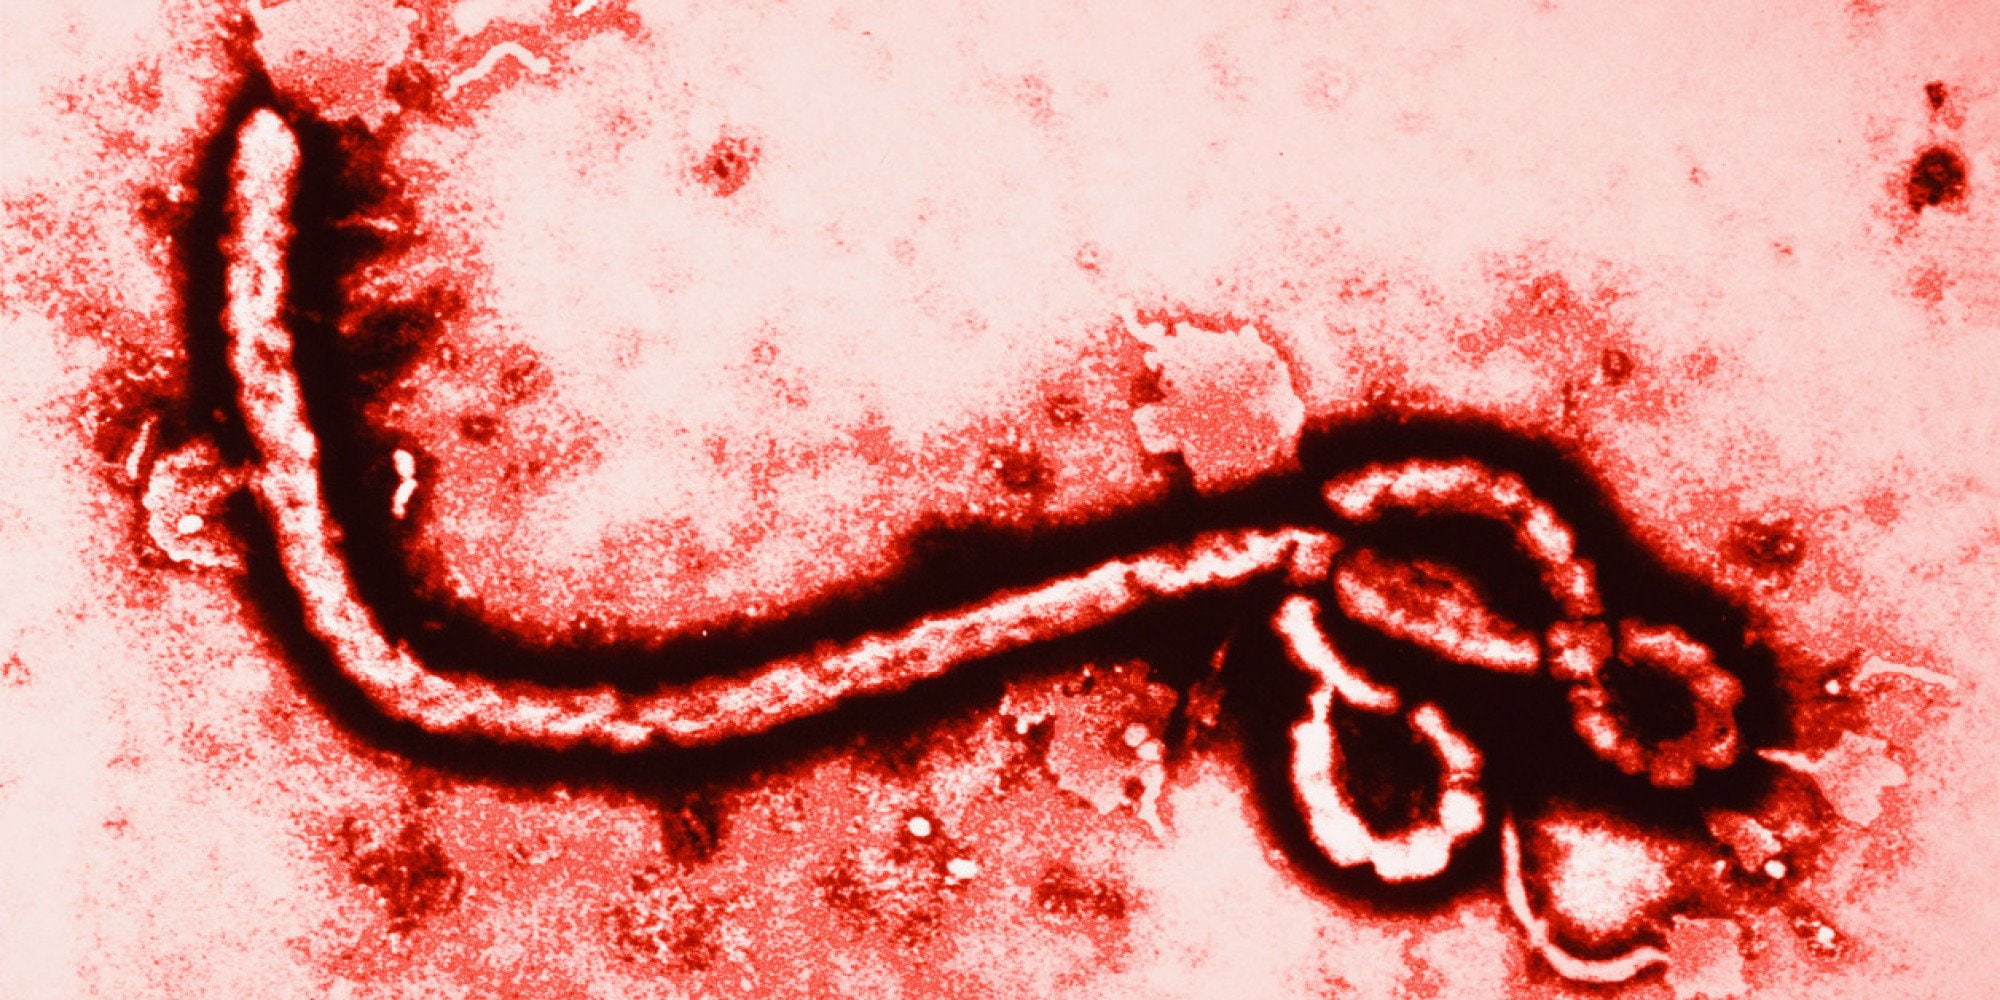 dark, ebola, horror, medical, virus